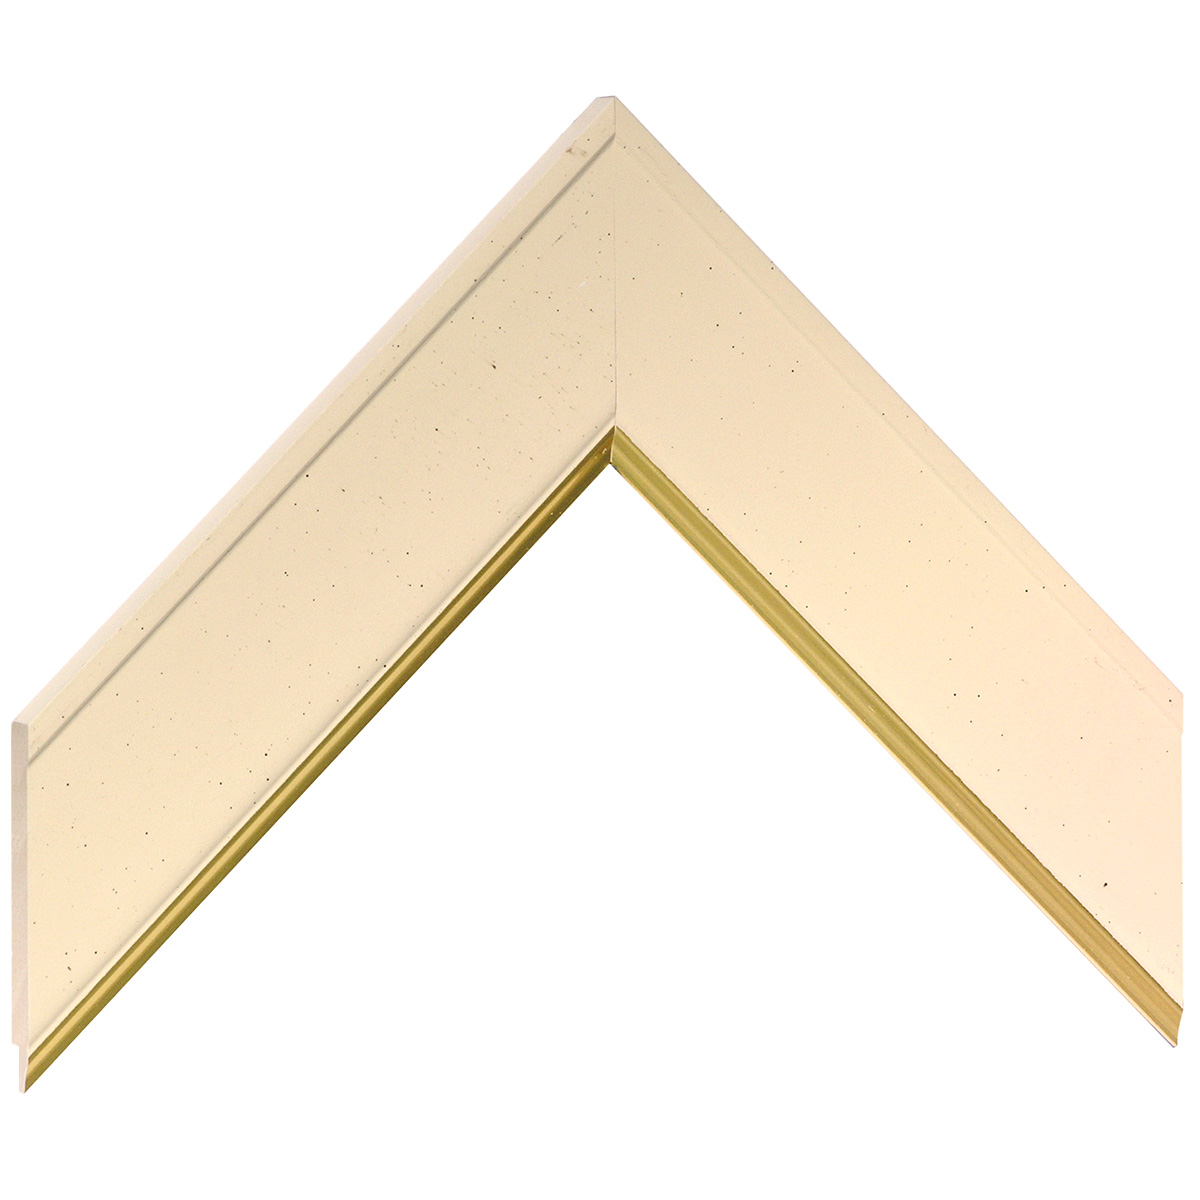 Liner finger-jointed pine 45mm - flat, beige, gold edge - Sample